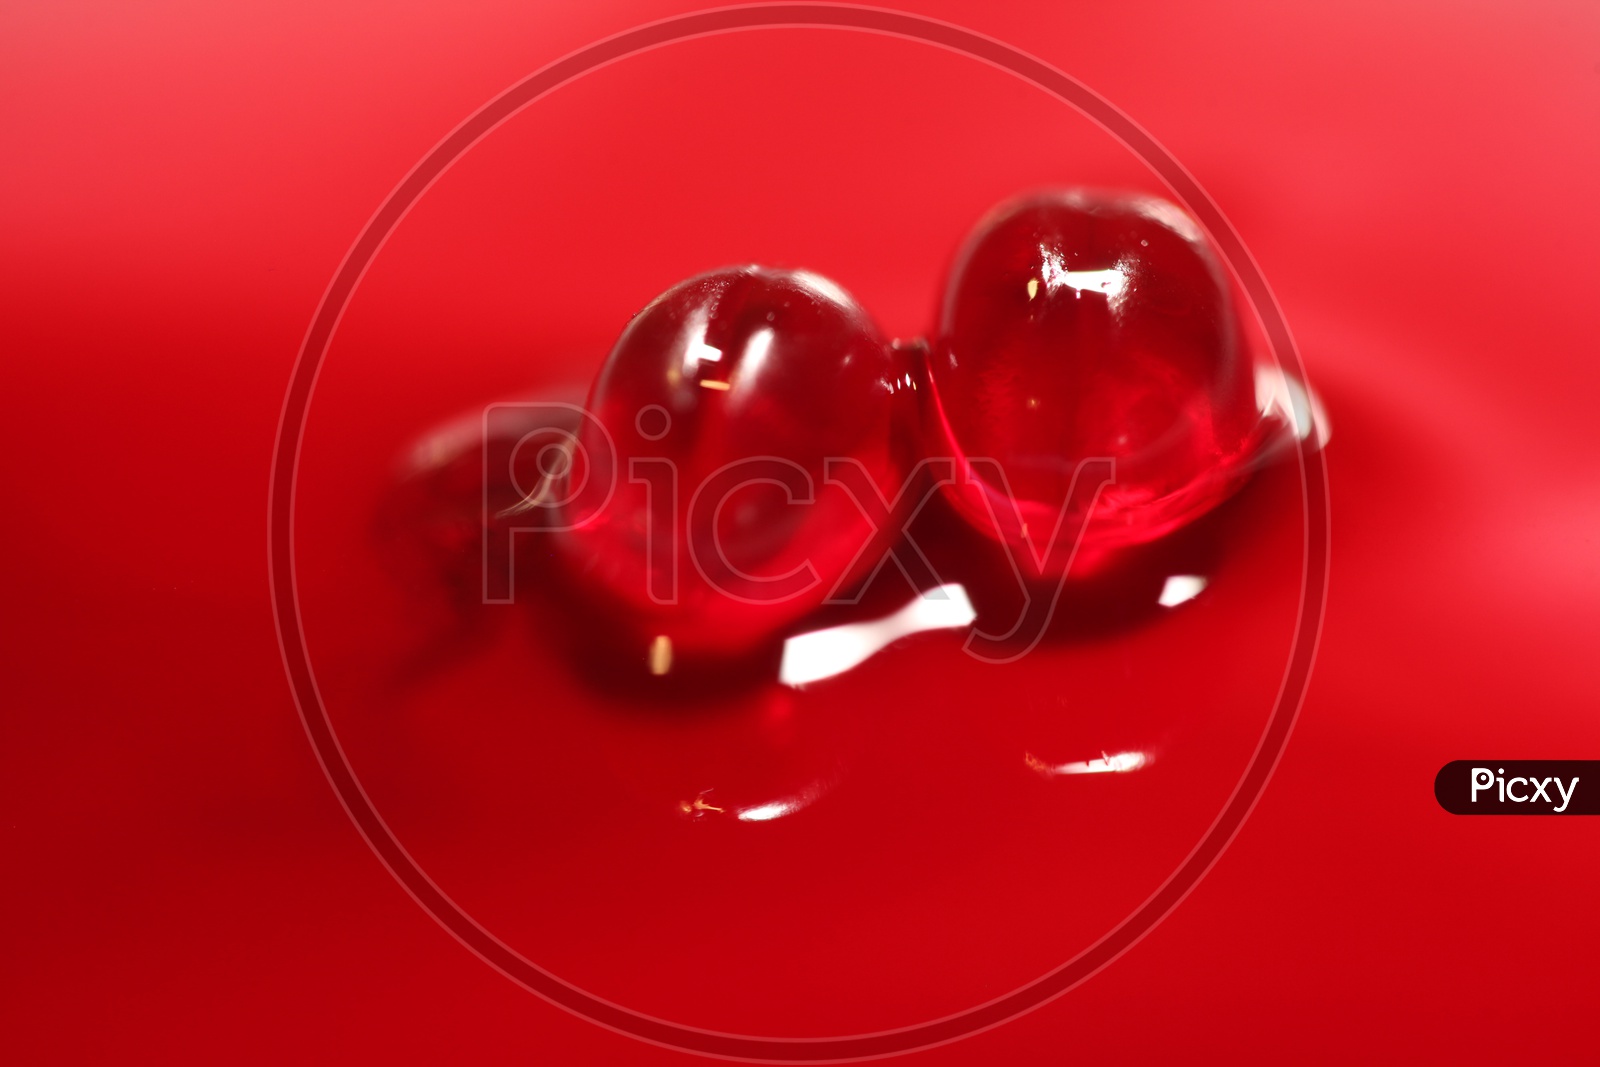 Red capsules and liquid